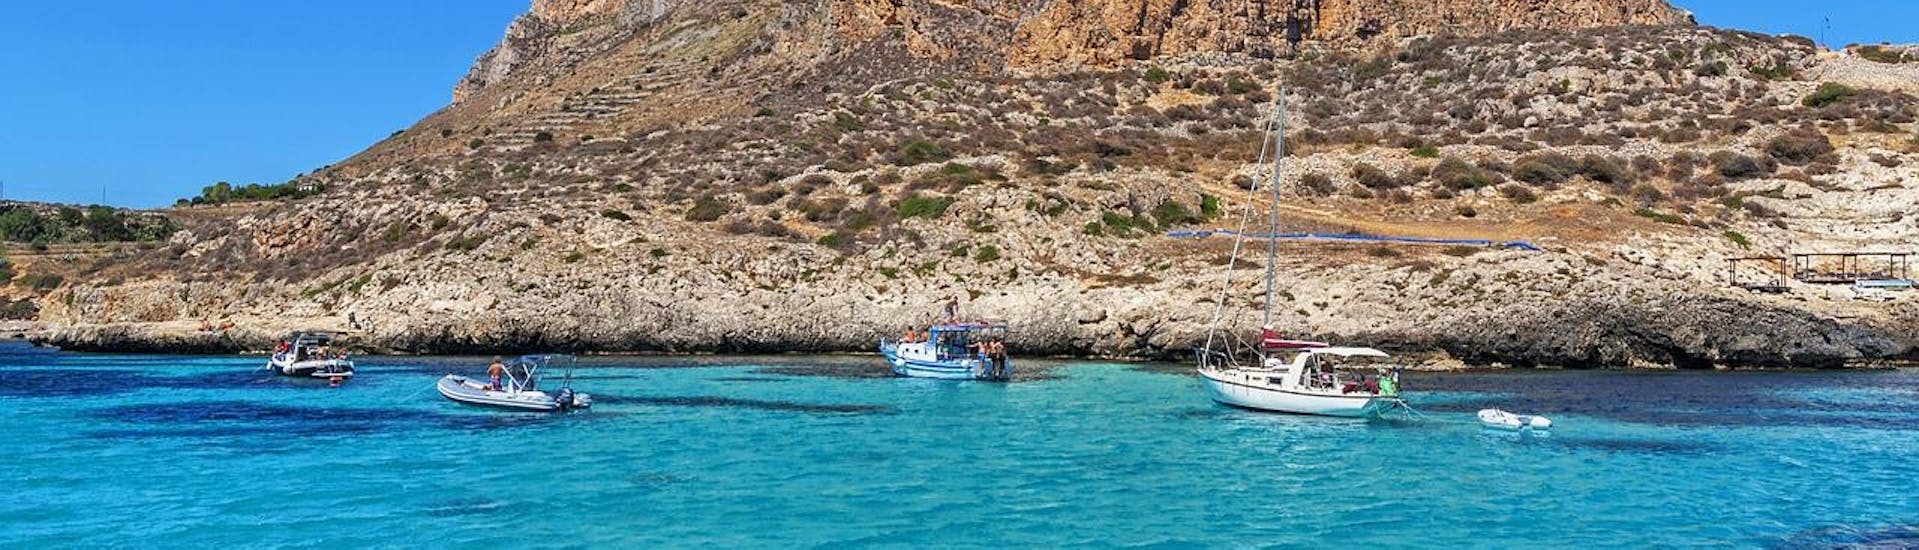 Paesaggio mozzafiato dell'arcipelago delle Egadi durante una gita in barca da San Vito Lo Capo a Favignana e Levanzo con Egadi Navigazione.